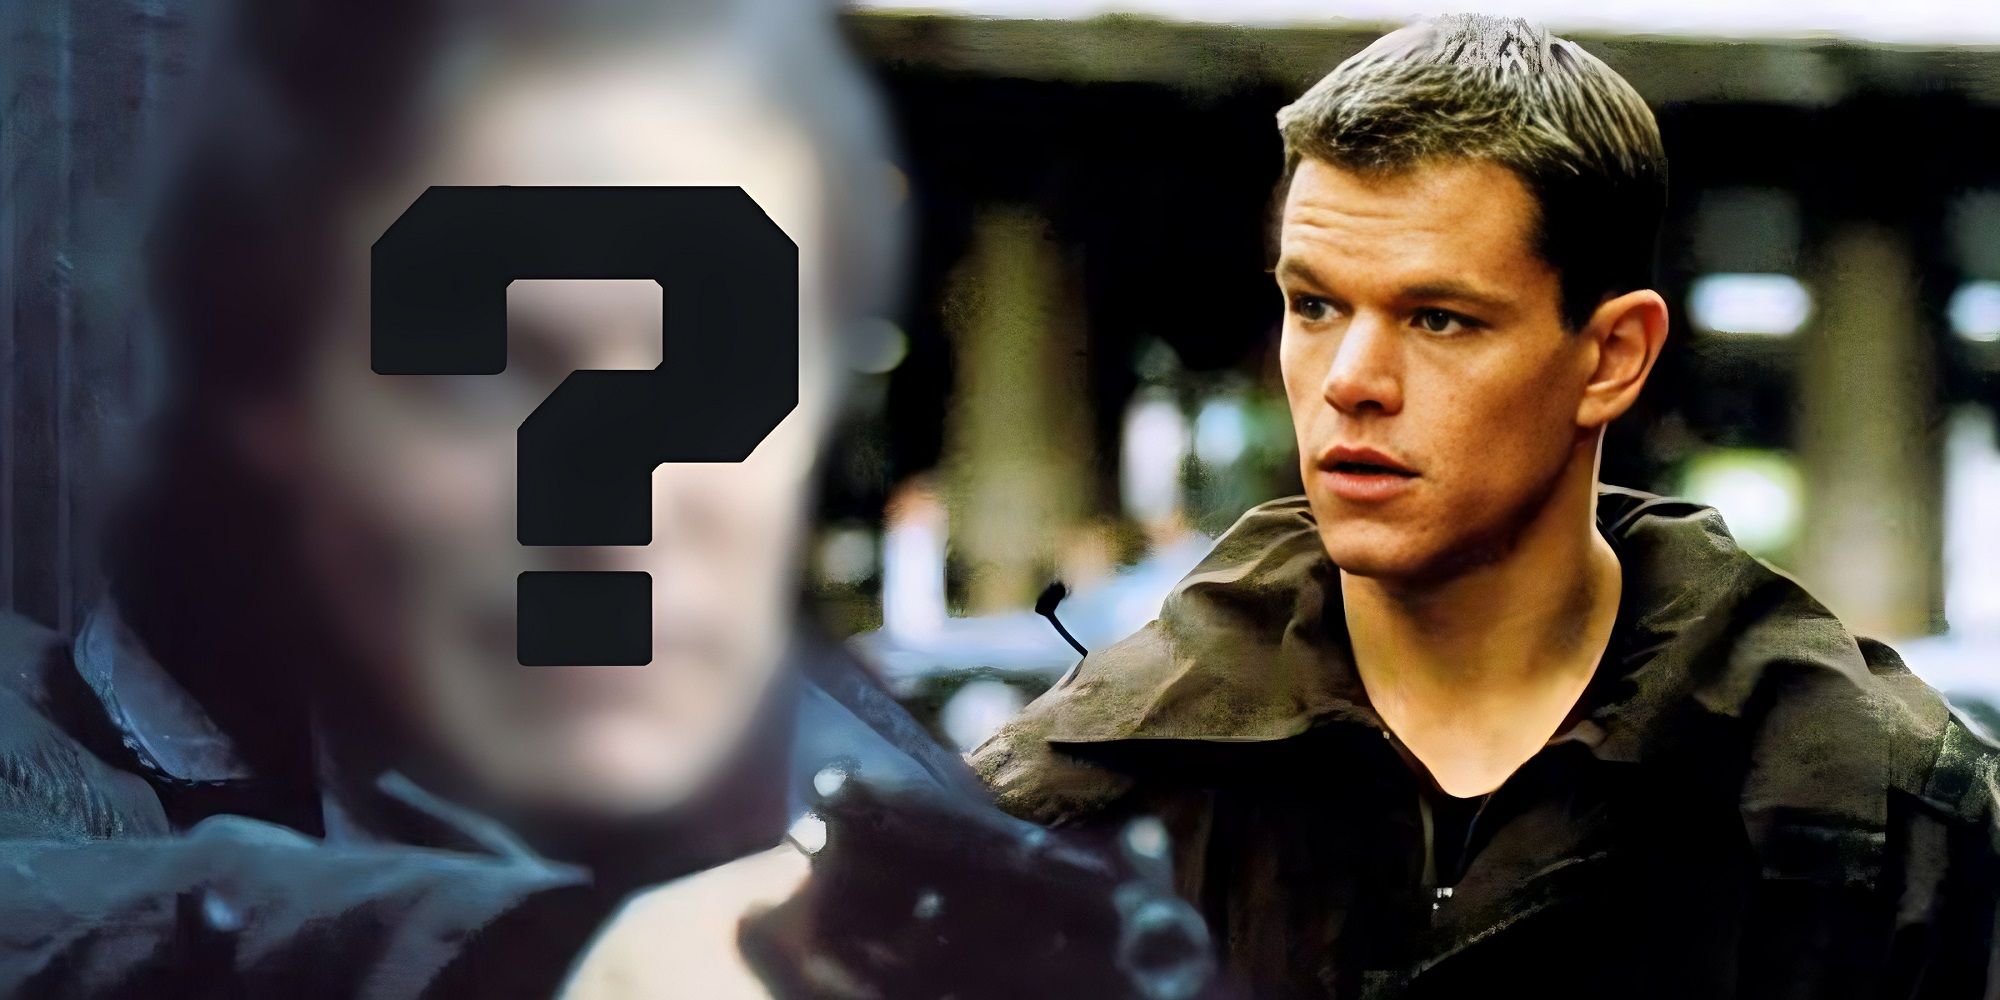 1 Actor Beat Matt Damon To Playing Jason Bourne By 16 Years